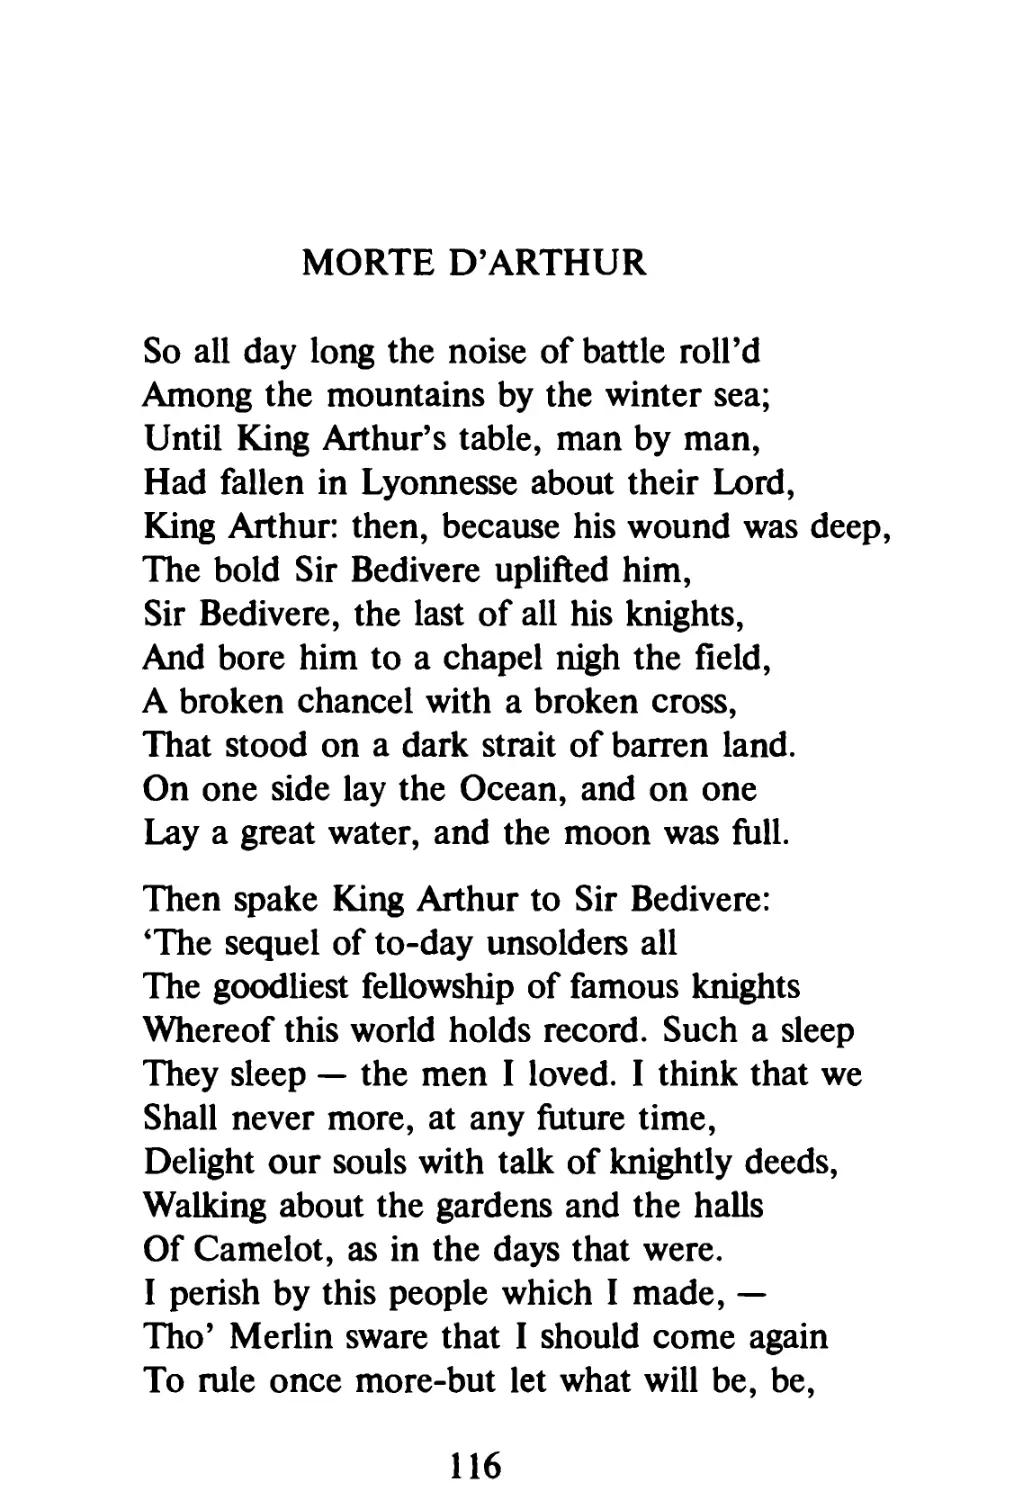 Morte D'Arthur